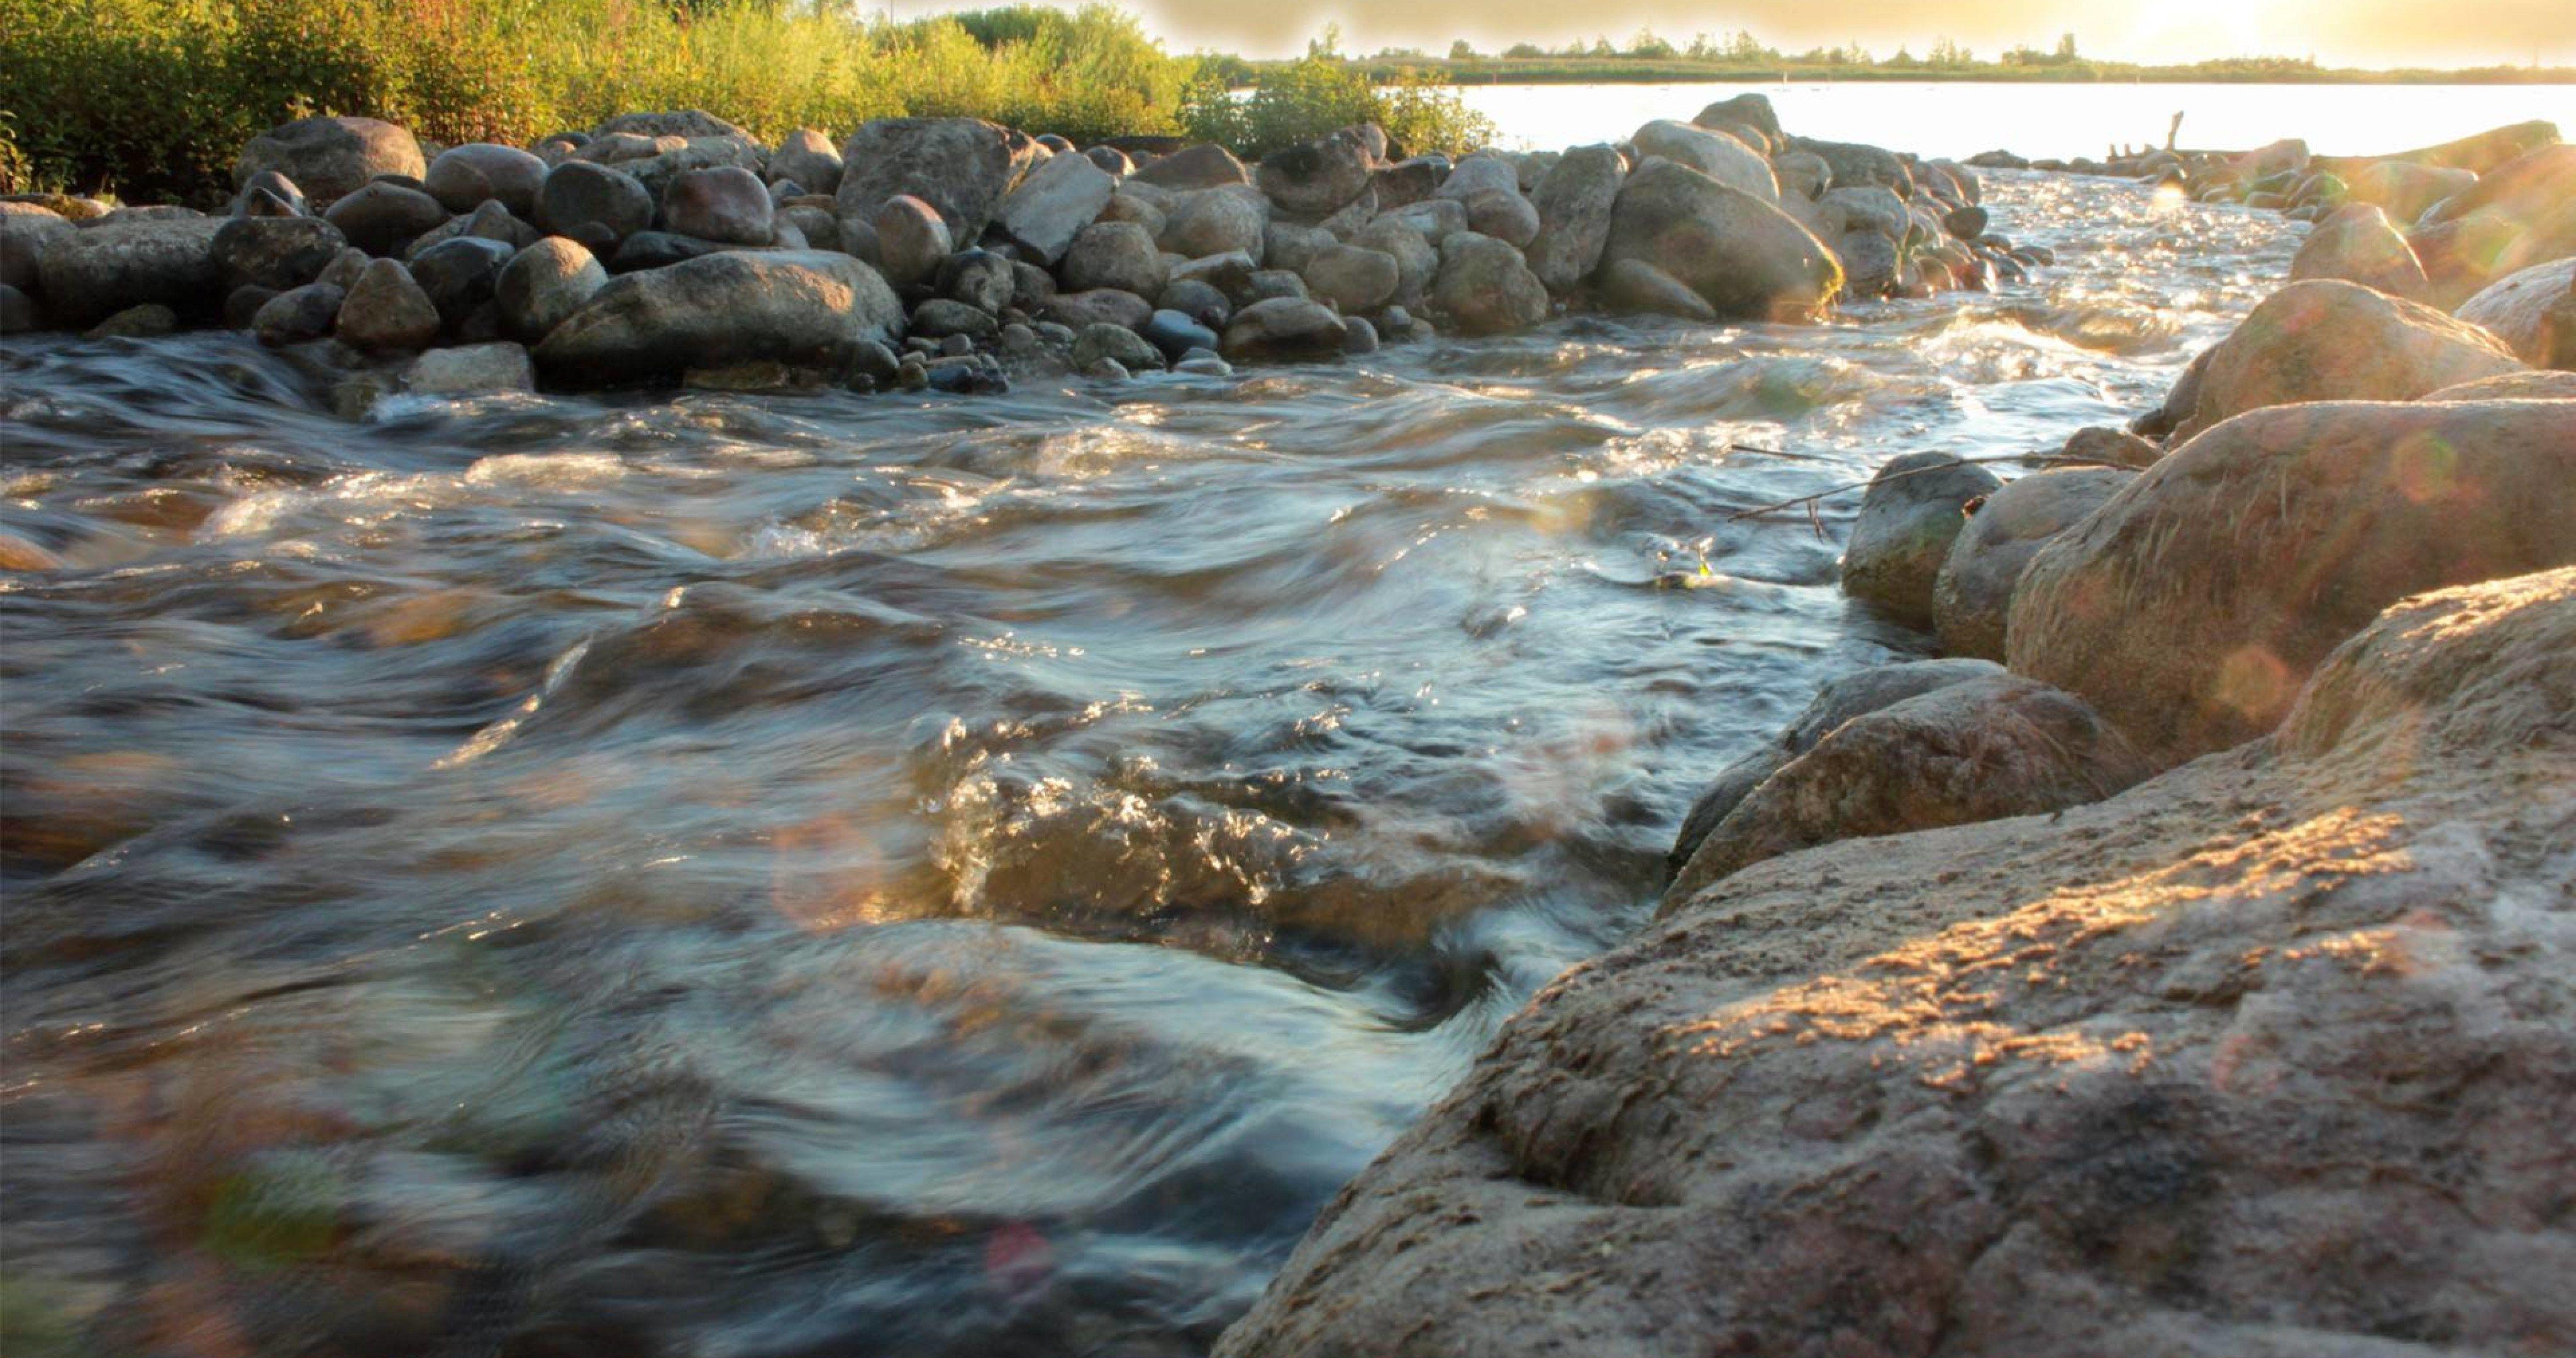 Стремительный бурный поток воды. Вода река. Ручей с камнями. Каменистый берег реки. Камни в реке.